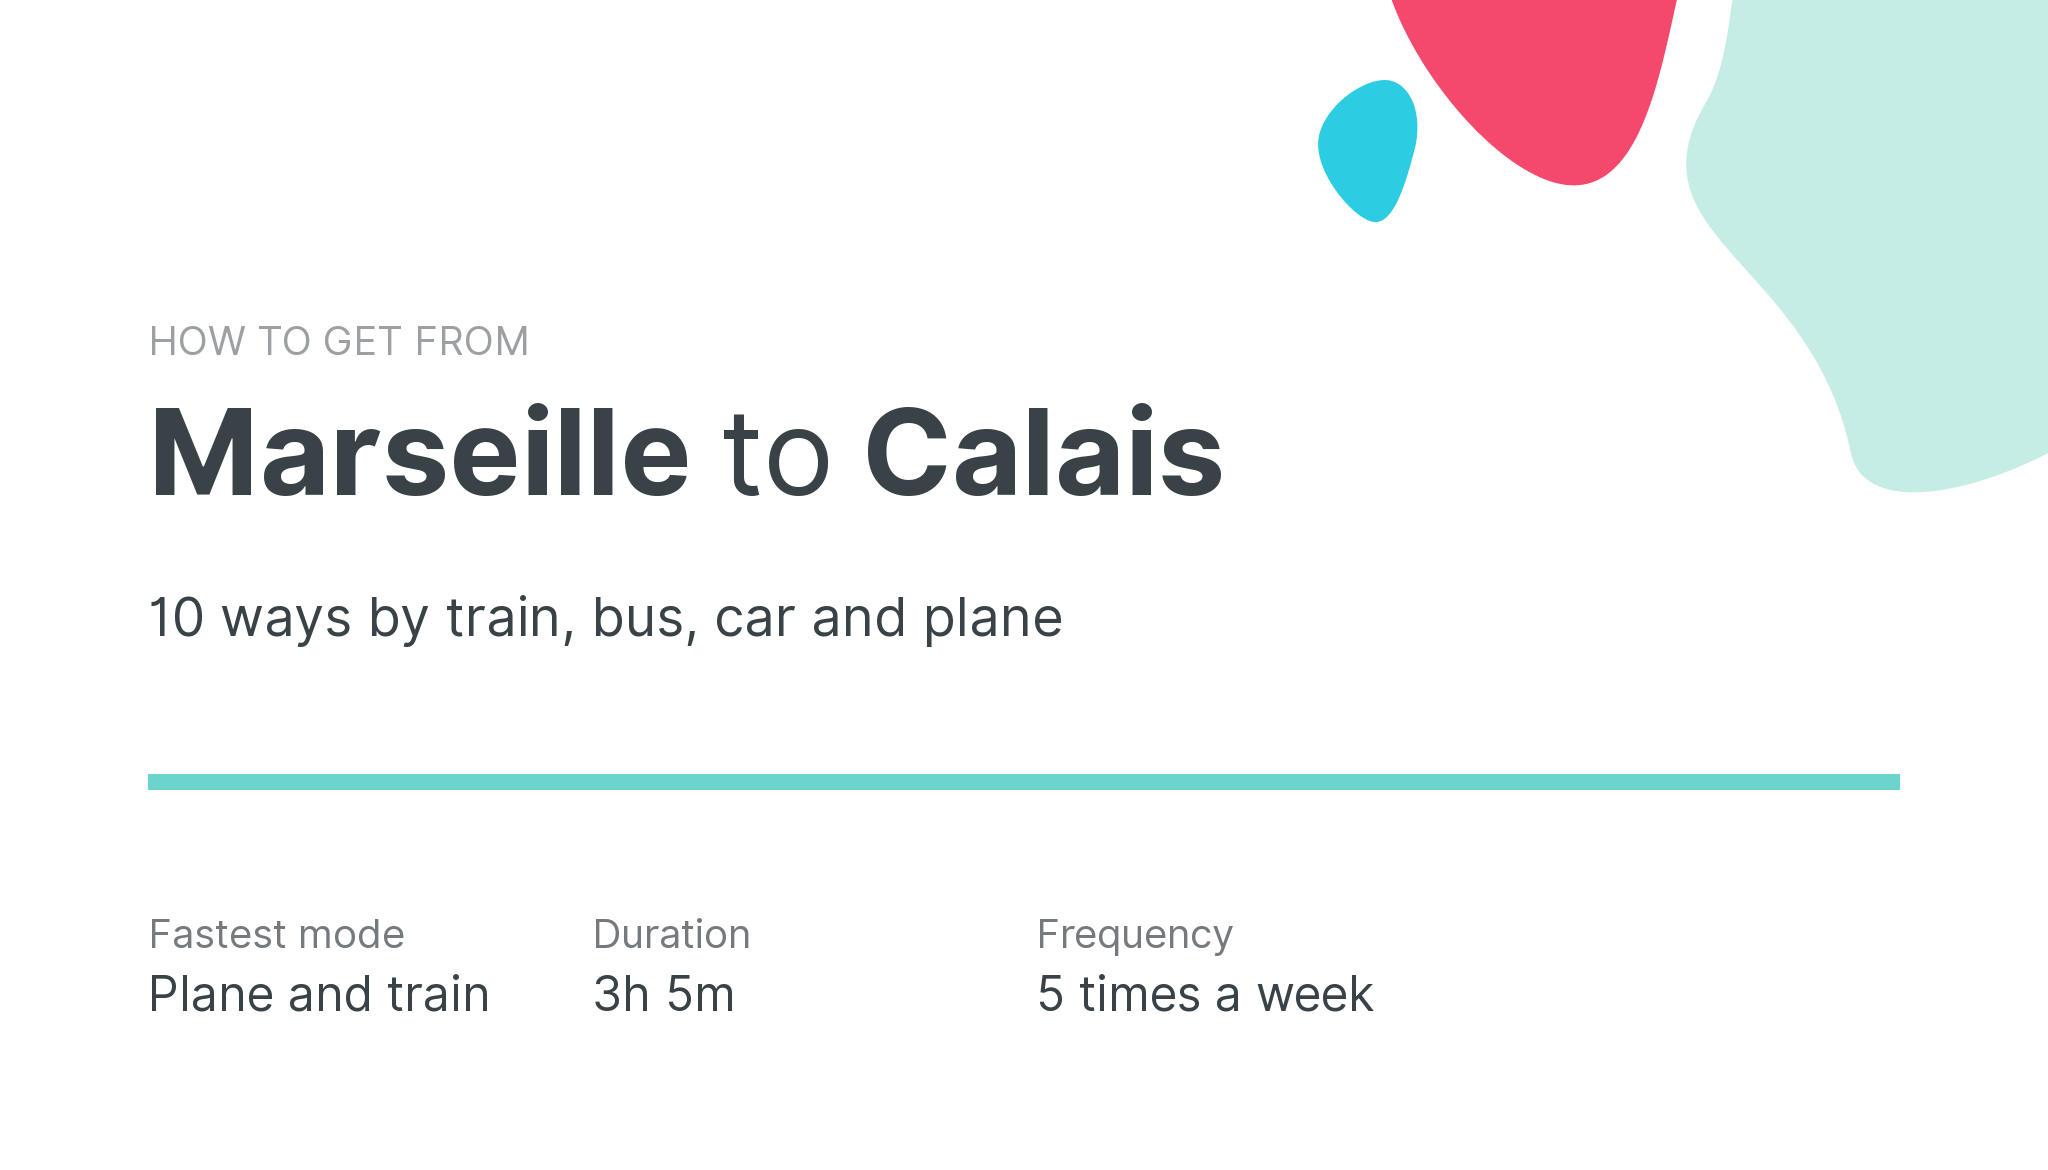 How do I get from Marseille to Calais